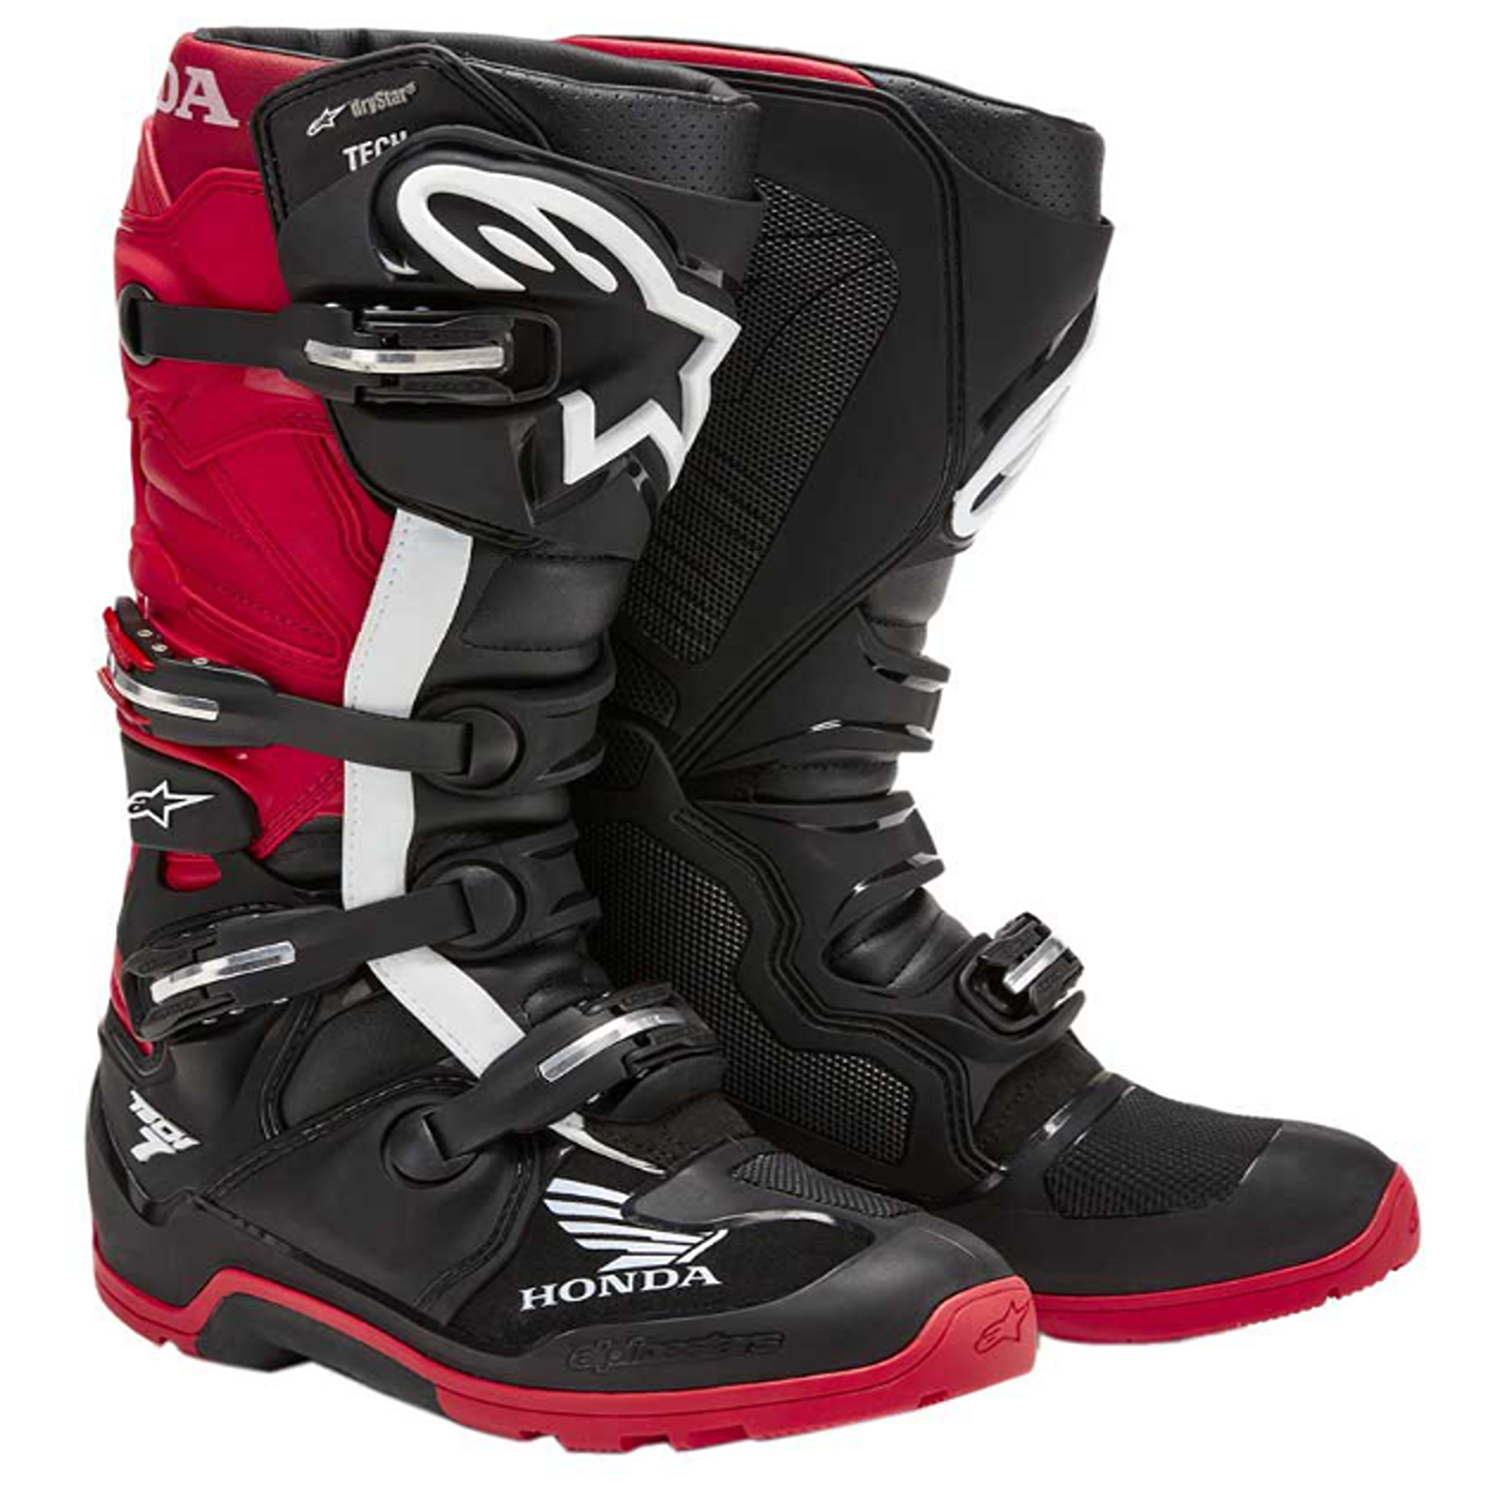 Image of Alpinestars Honda Tech 7 Enduro Drystar Boots Black Bright Red Größe US 7